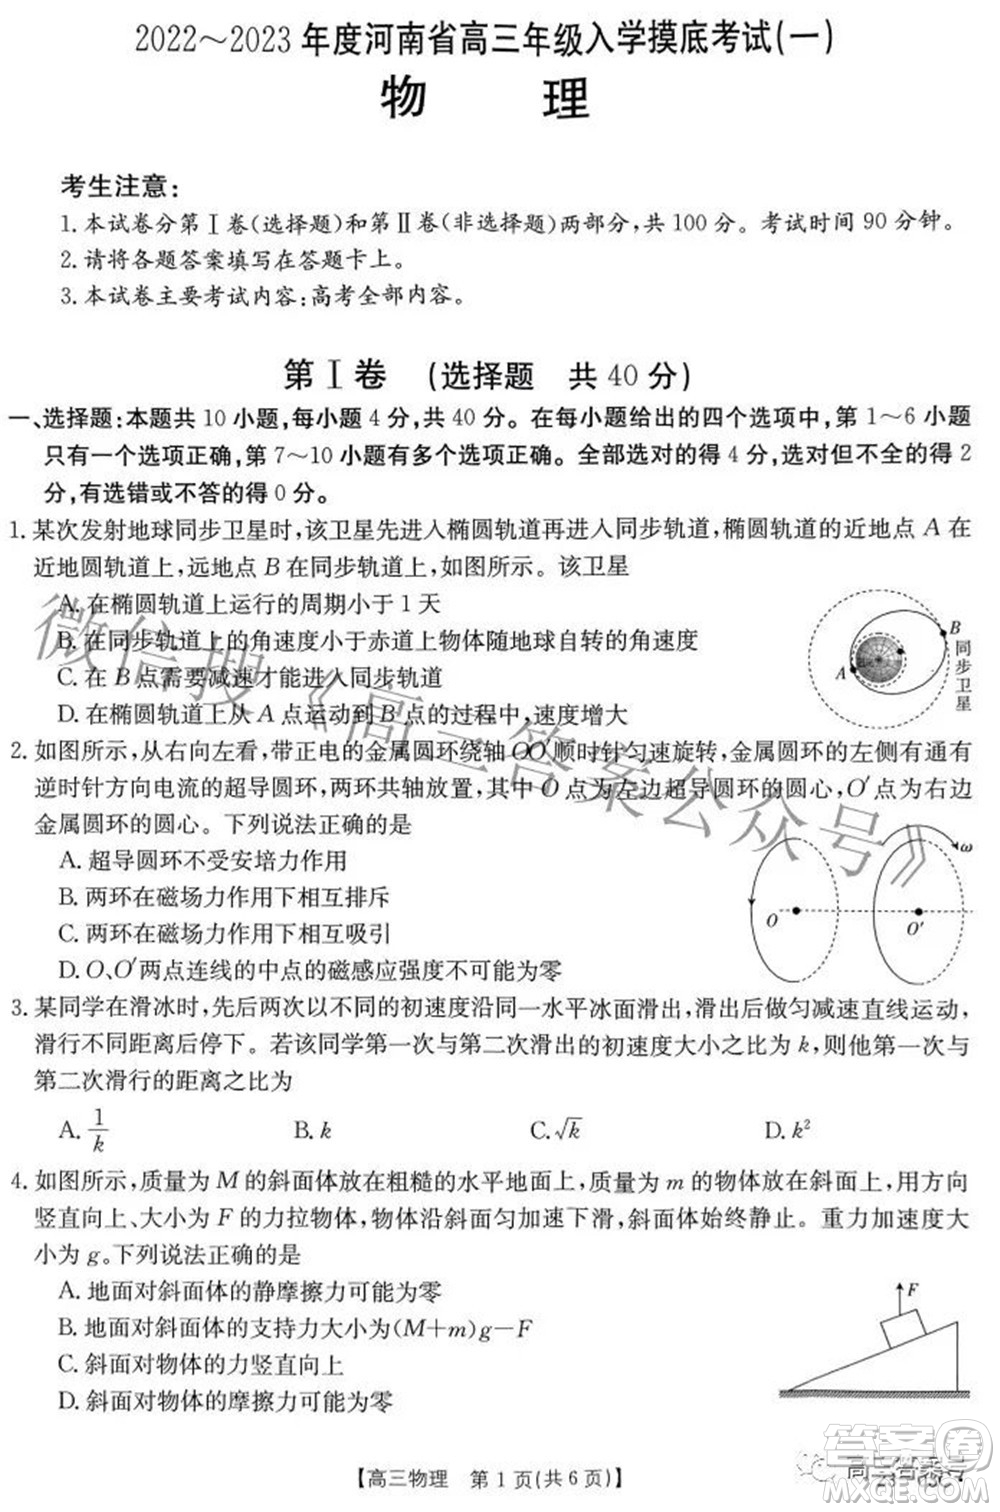 2022-2023年度河南省高三年级入学摸底考试一物理试题及答案